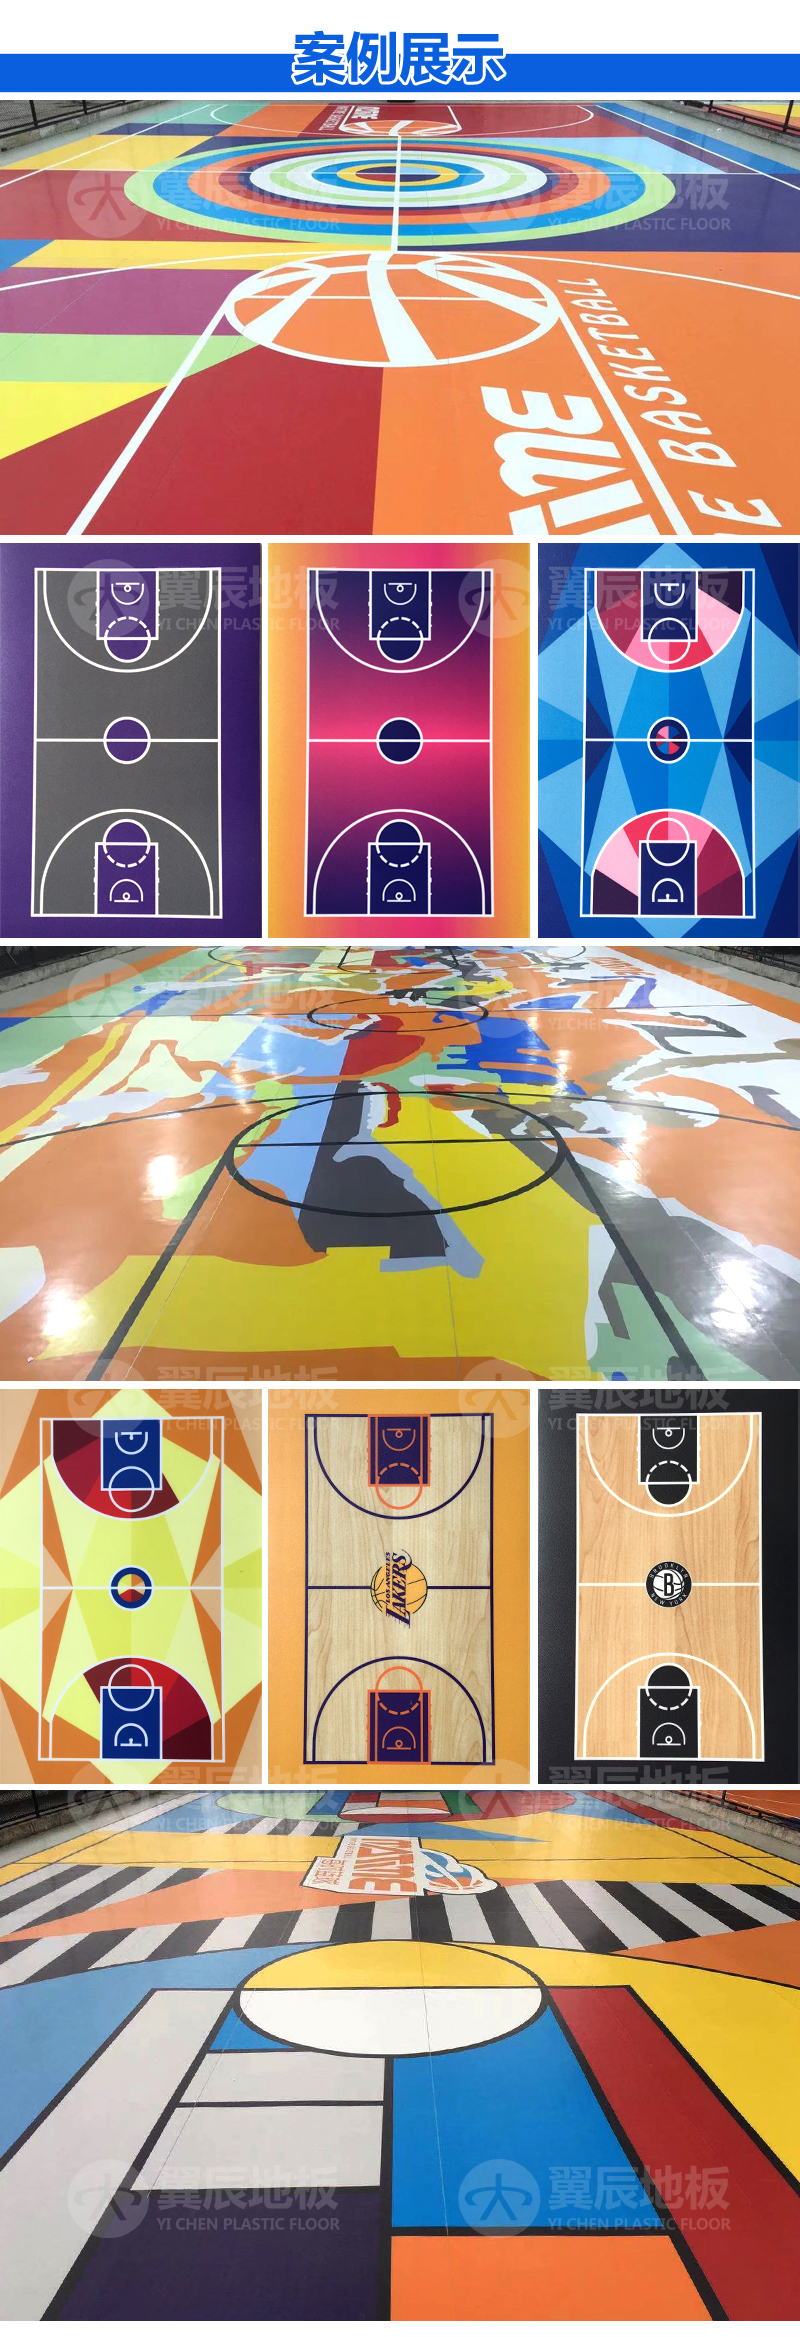 篮球场打印定制地板案例